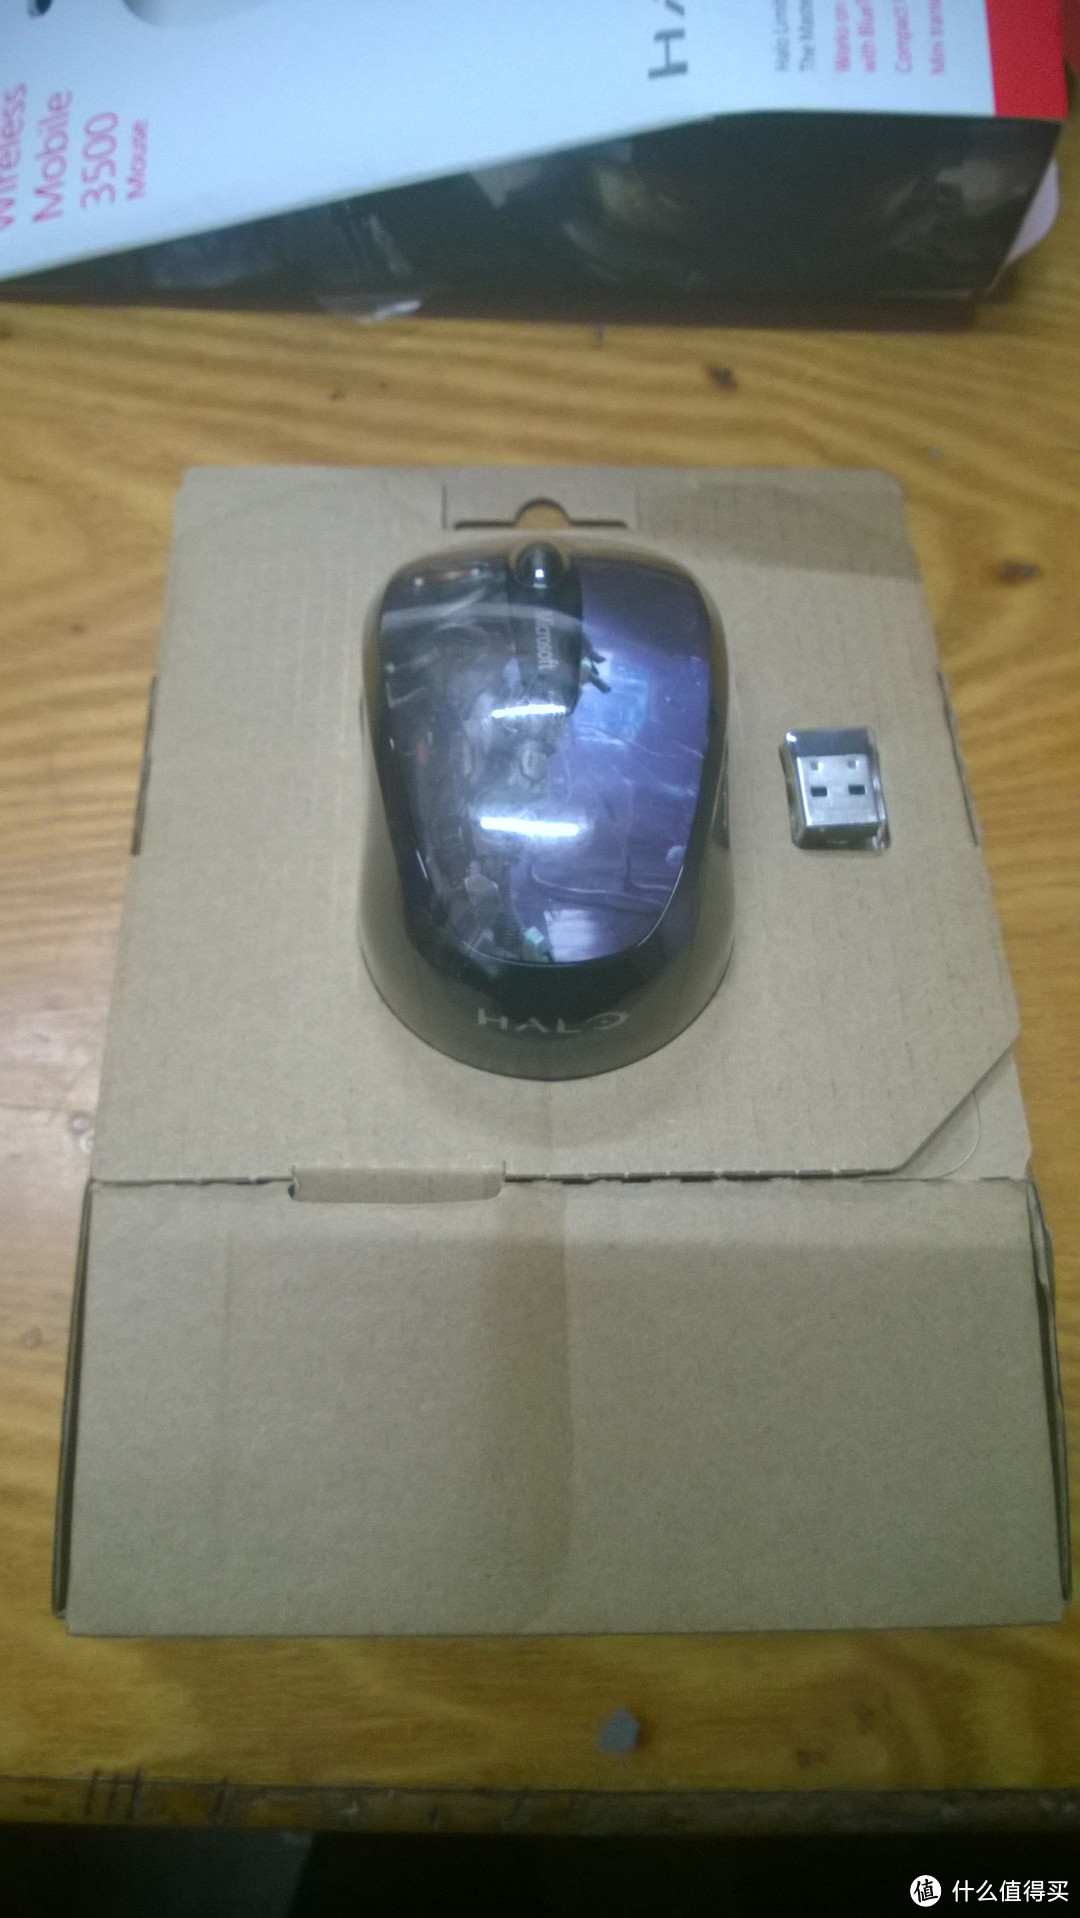 微软无线蓝影便携鼠标 3500 Halo 限量版开箱